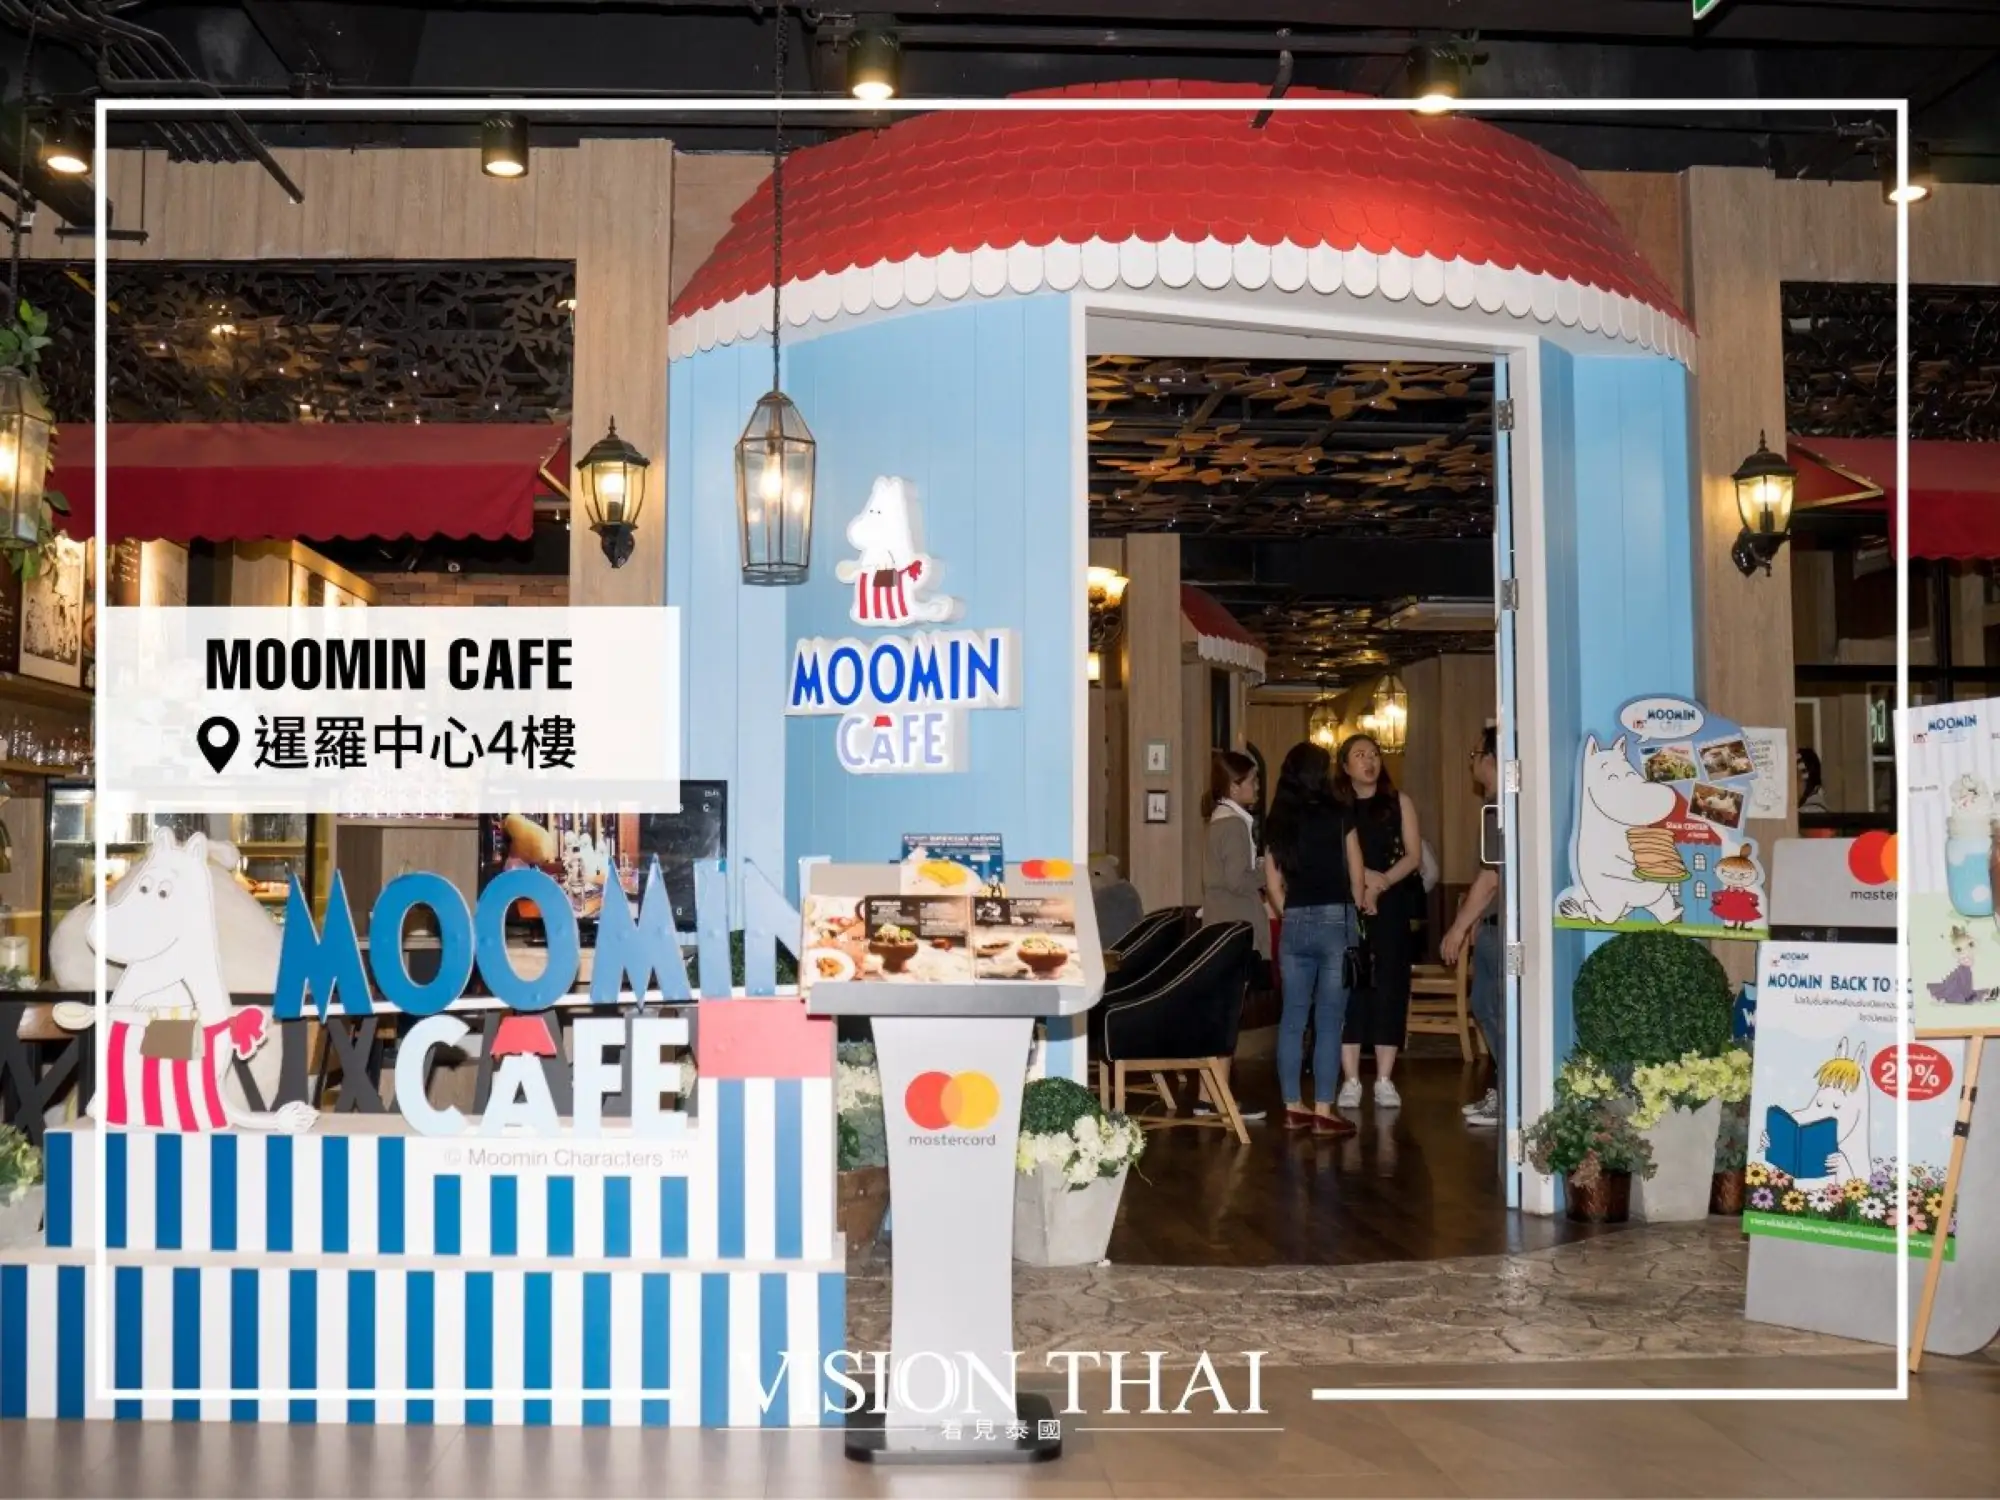 曼谷暹罗中心有超可爱的Moomin Cafe